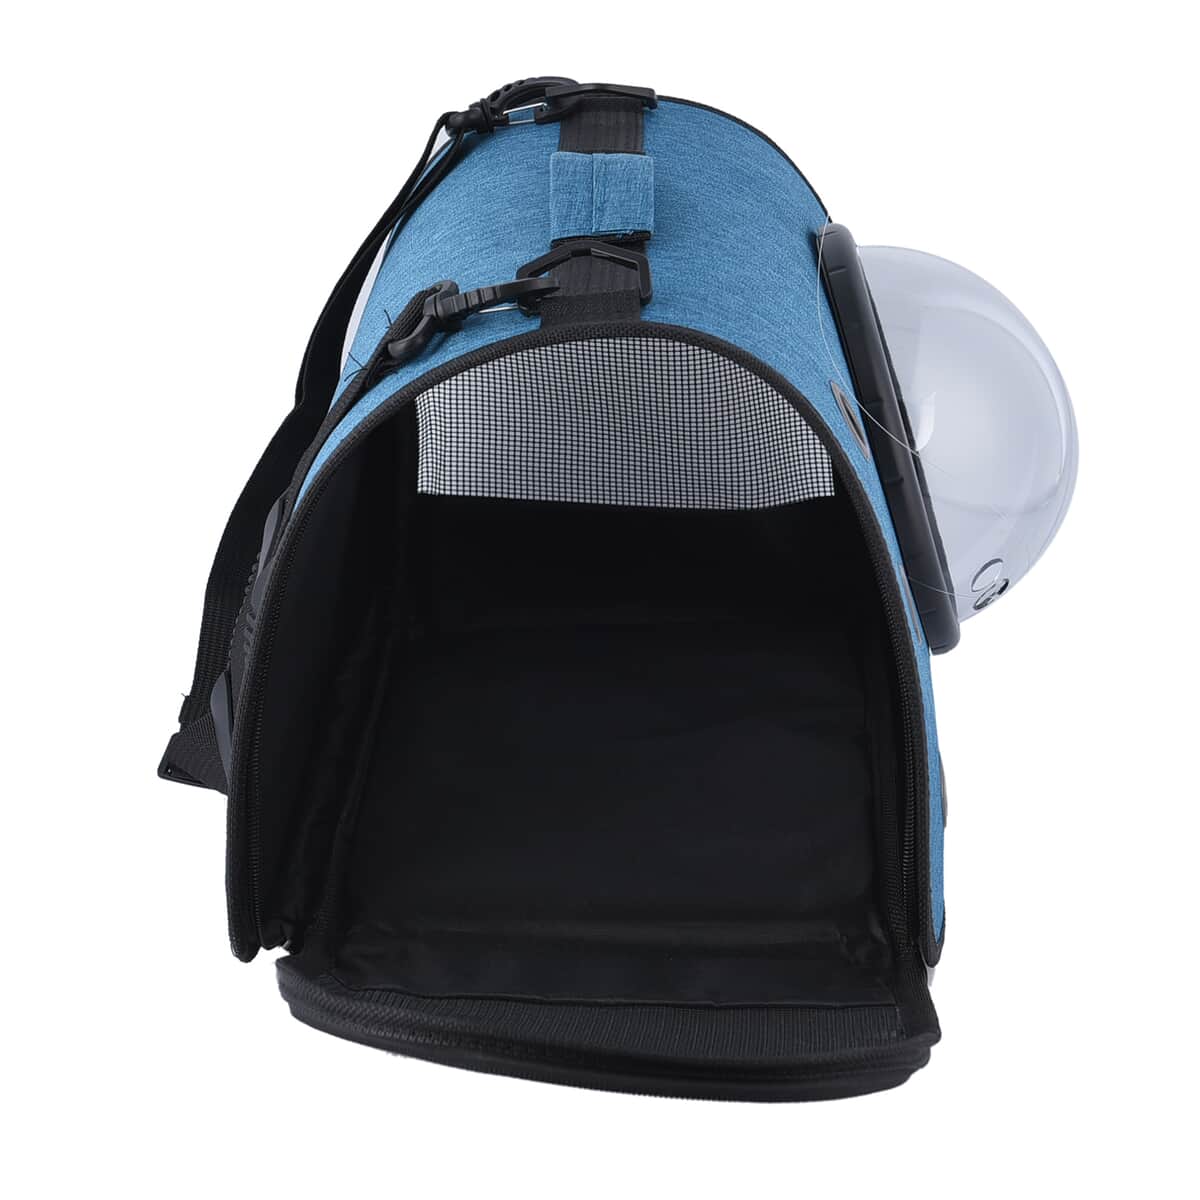 Blue Oxford Fabfric Pet Bag (15.75"x10.24"x11.81") with Adjustable Shoulder Strap image number 5